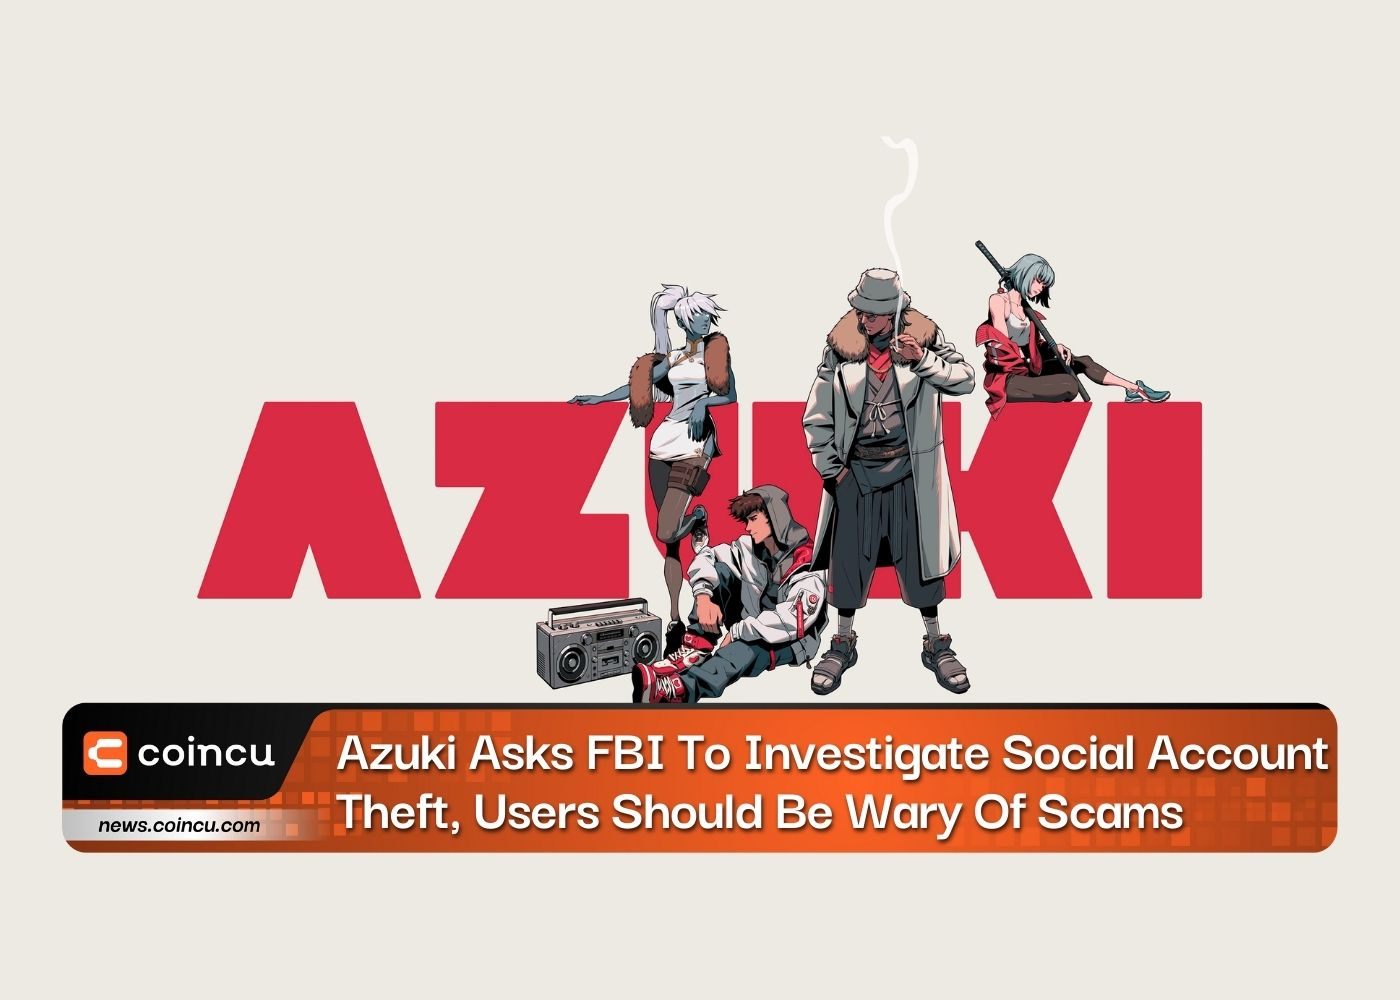 अज़ुकी ने एफबीआई से सामाजिक खाता चोरी की जांच करने को कहा, उपयोगकर्ताओं को घोटालों से सावधान रहना चाहिए